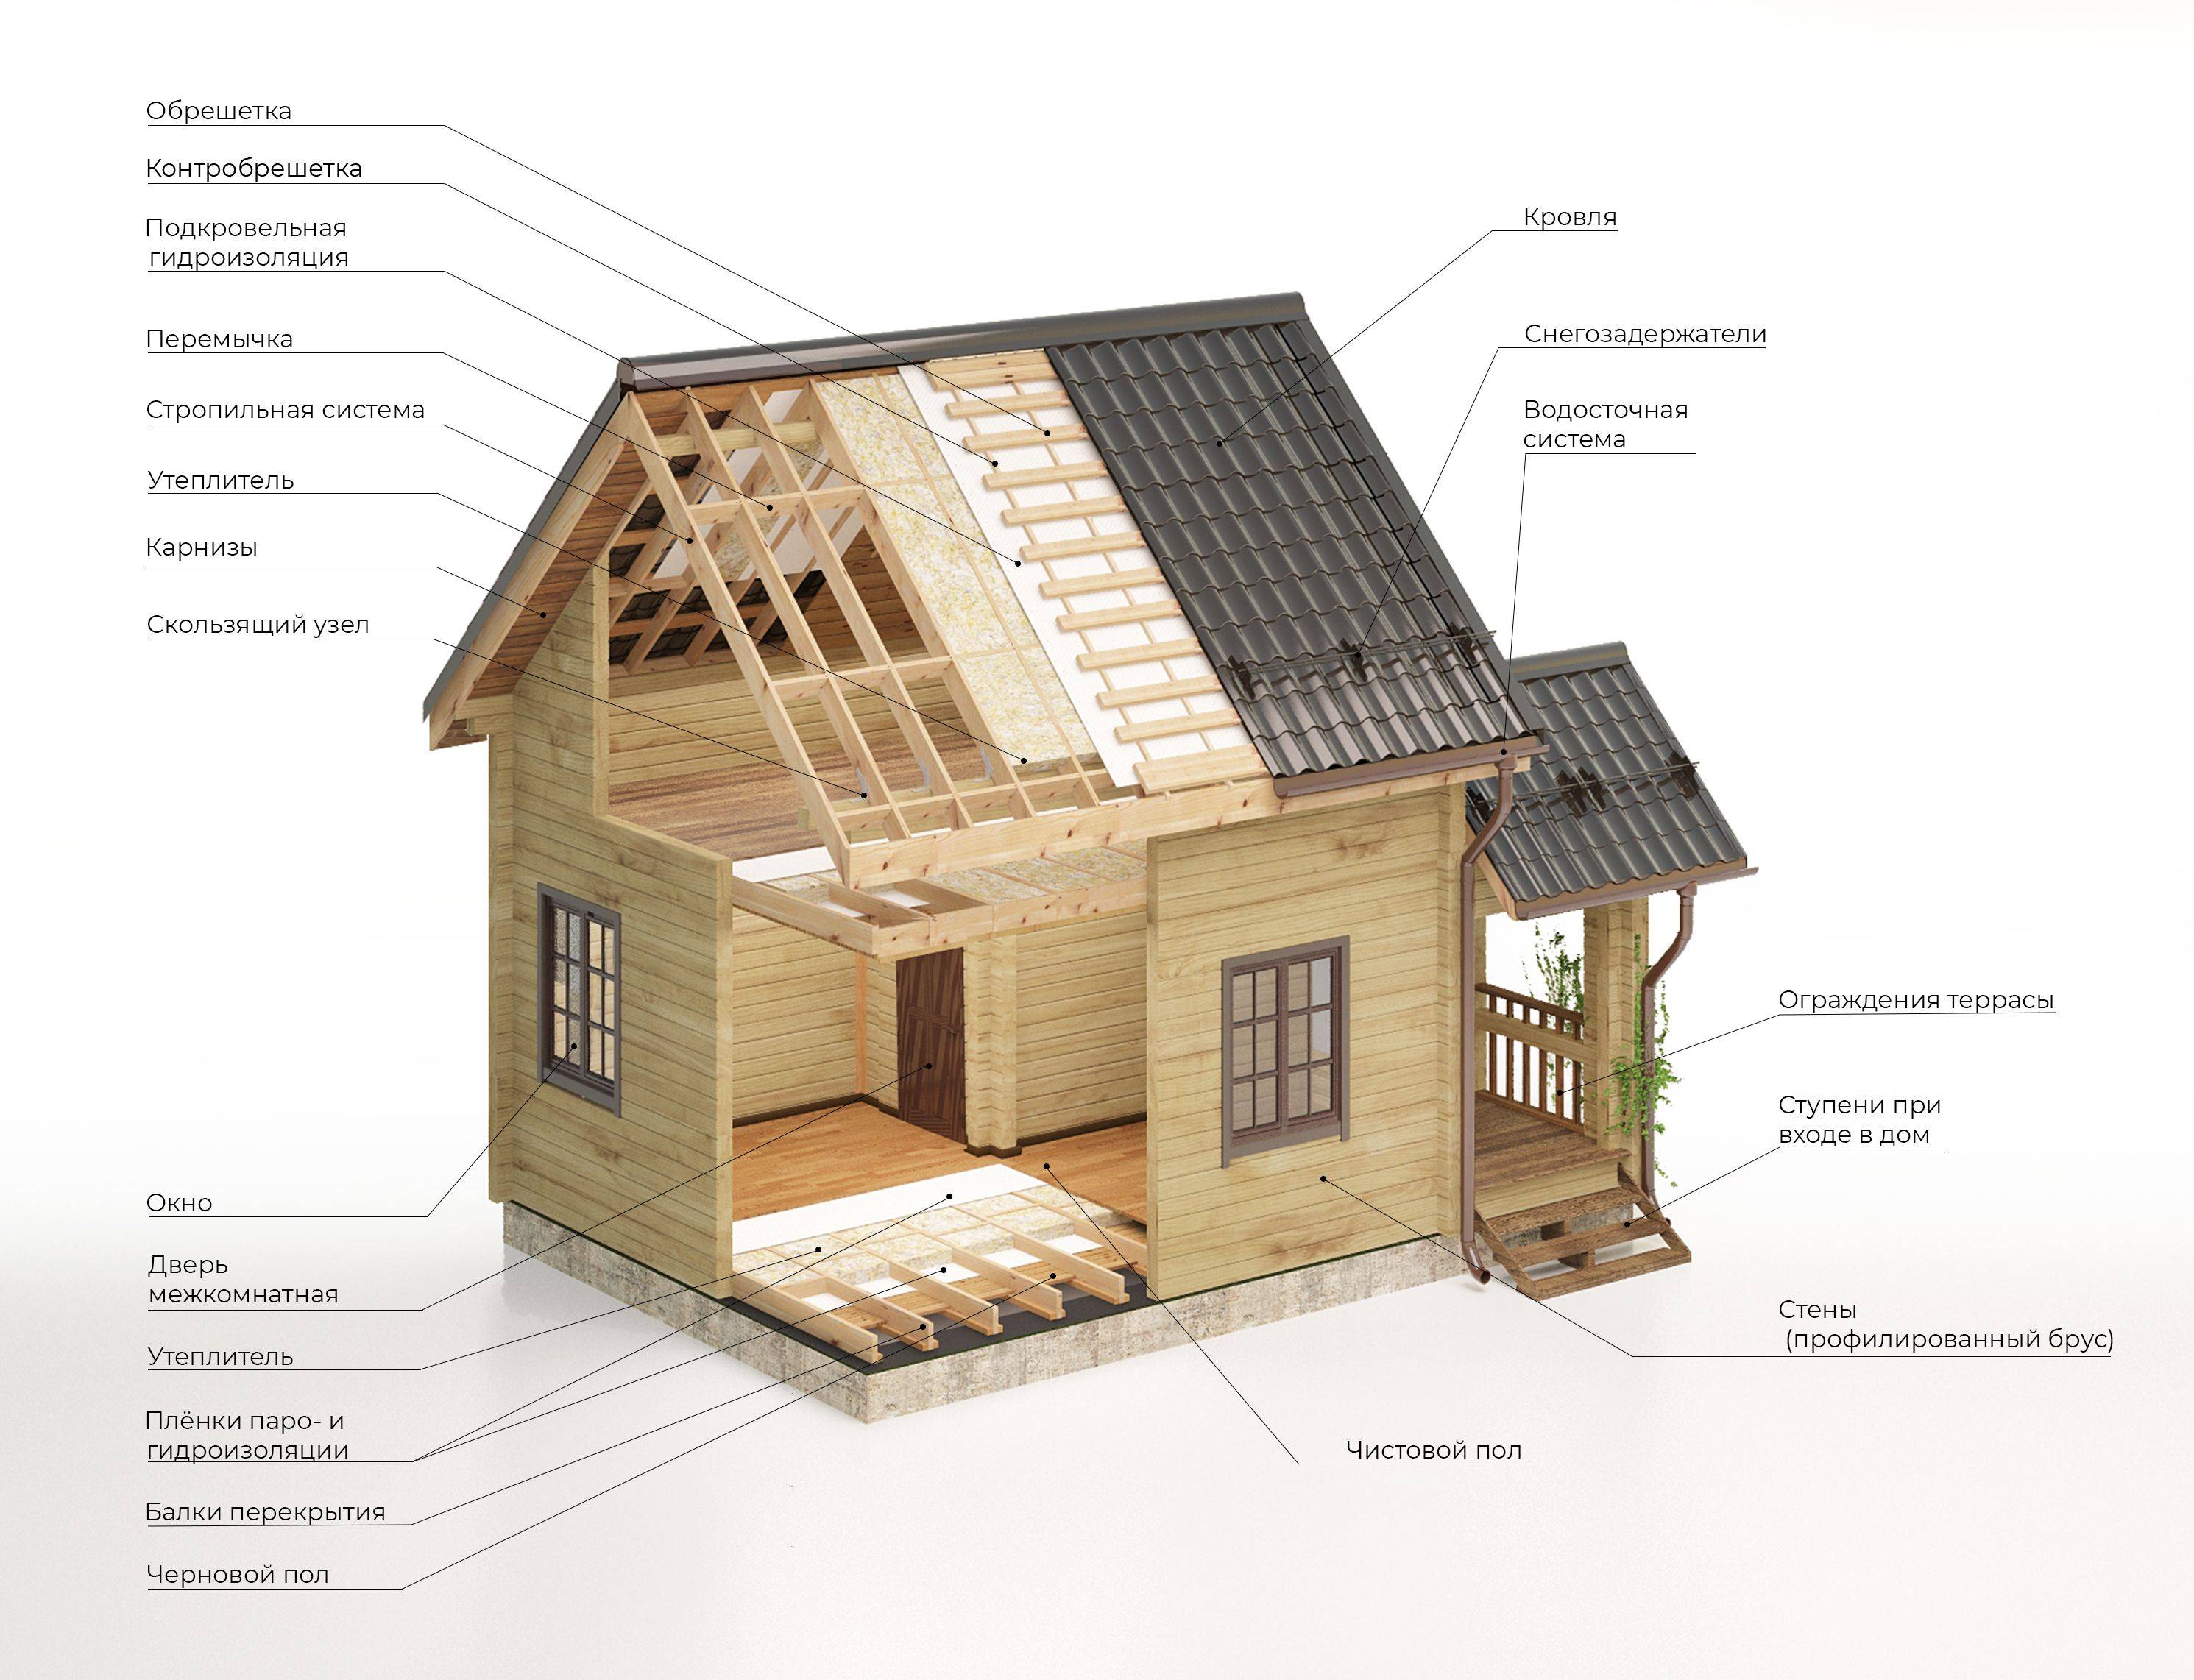 Строительство дома из профилированного бруса своими руками – пошаговая инструкция + фото-видео — sibear.ru